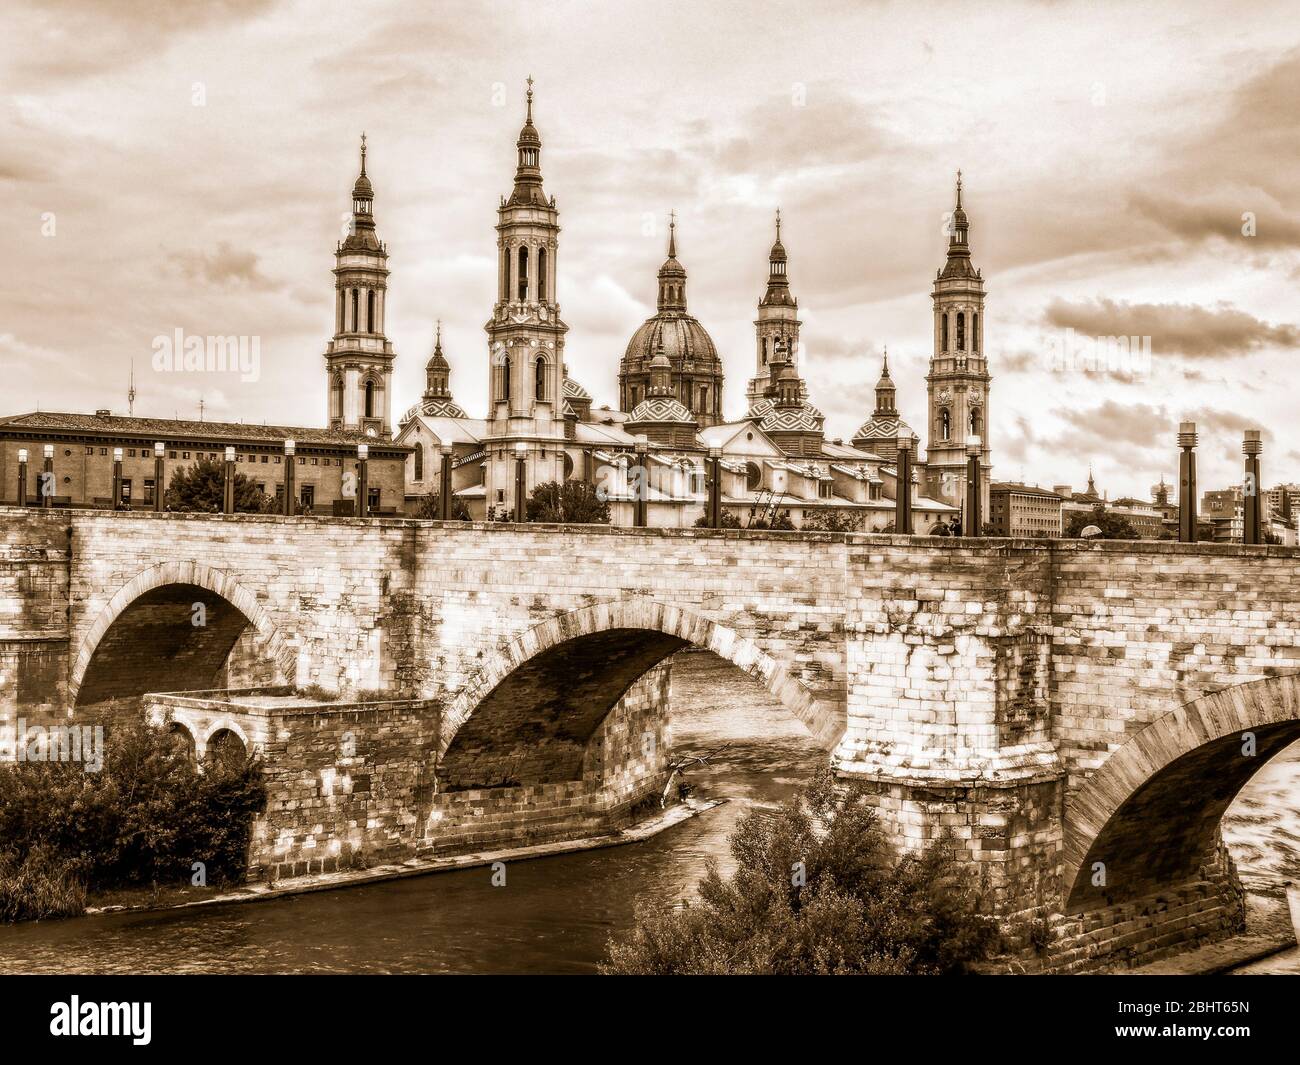 Puente de piedra y Basílica de Nuestra Señora del Pilar. Zaragoza. Aragón. España Stock Photo